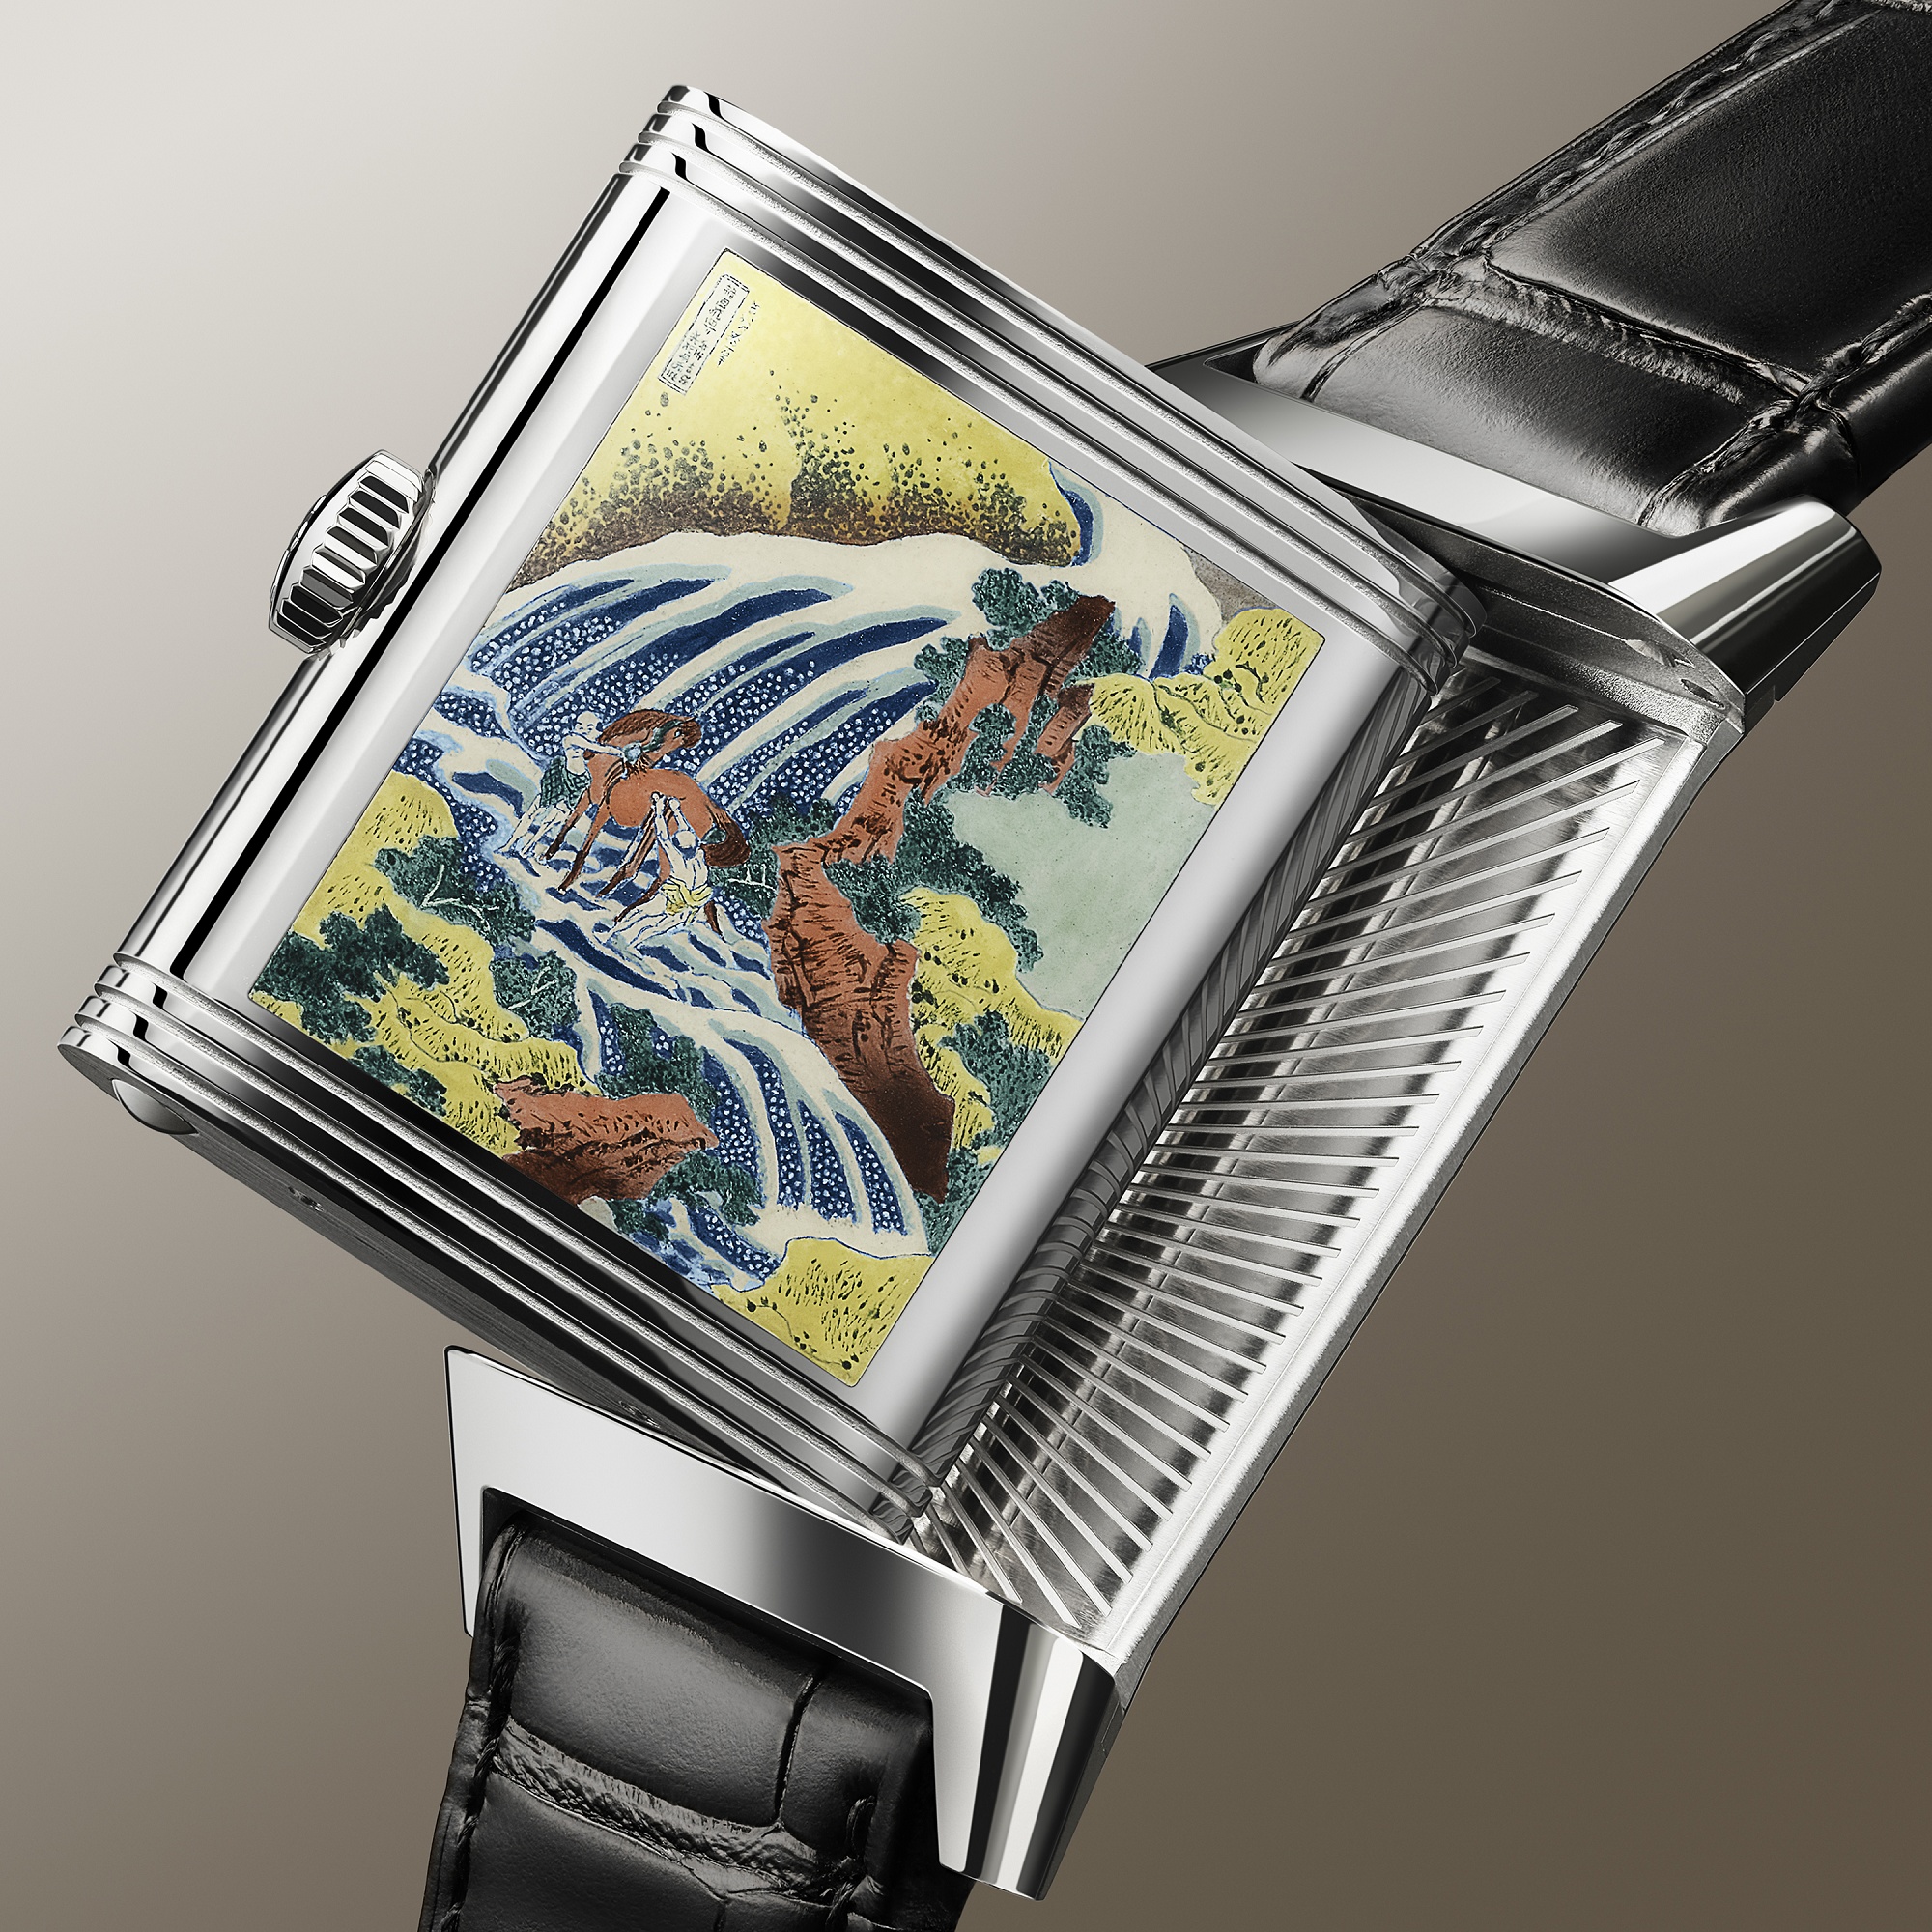 『新表』Jaeger-LeCoultre 推出2枚 Reverso Tribute Enamel Hokusai 葛饰北斋瀑布主题浮世绘珐琅微绘工艺腕表